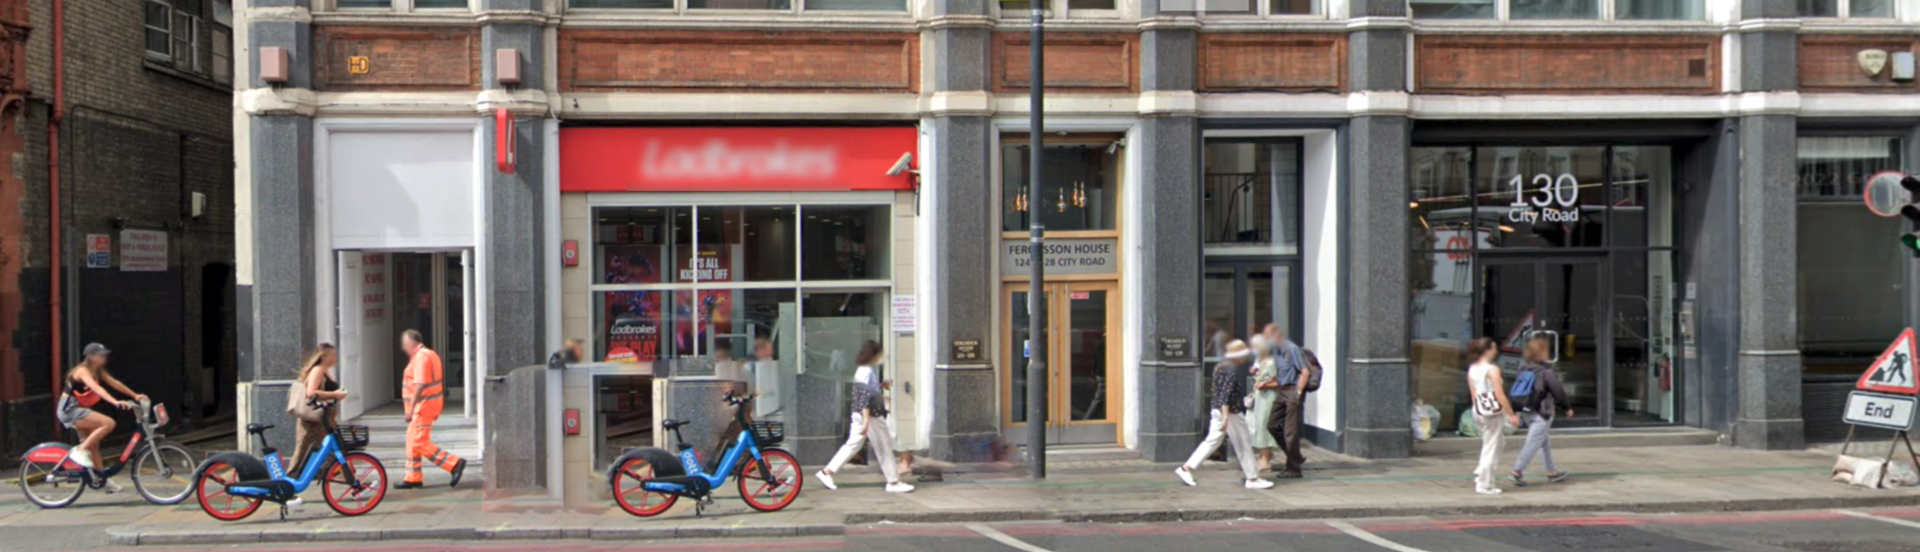 Street scene outside Exigia's London Registered Office